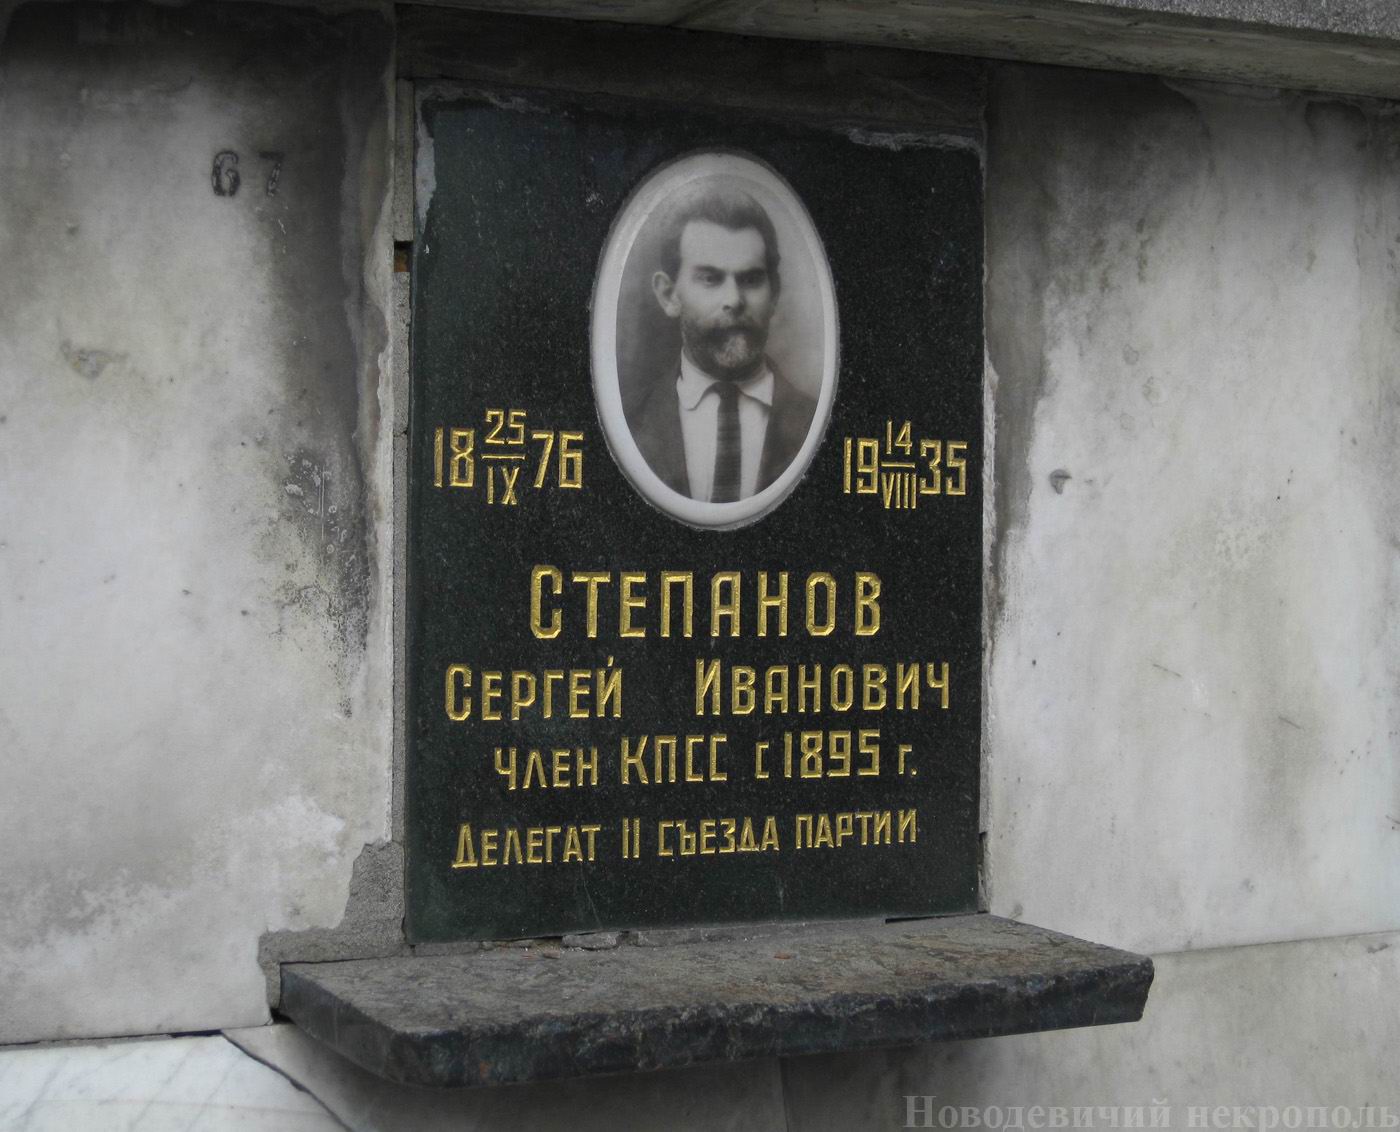 Плита на нише Степанова С.И. (1876-1935), на Новодевичьем кладбище (колумбарий [4]-2-2).